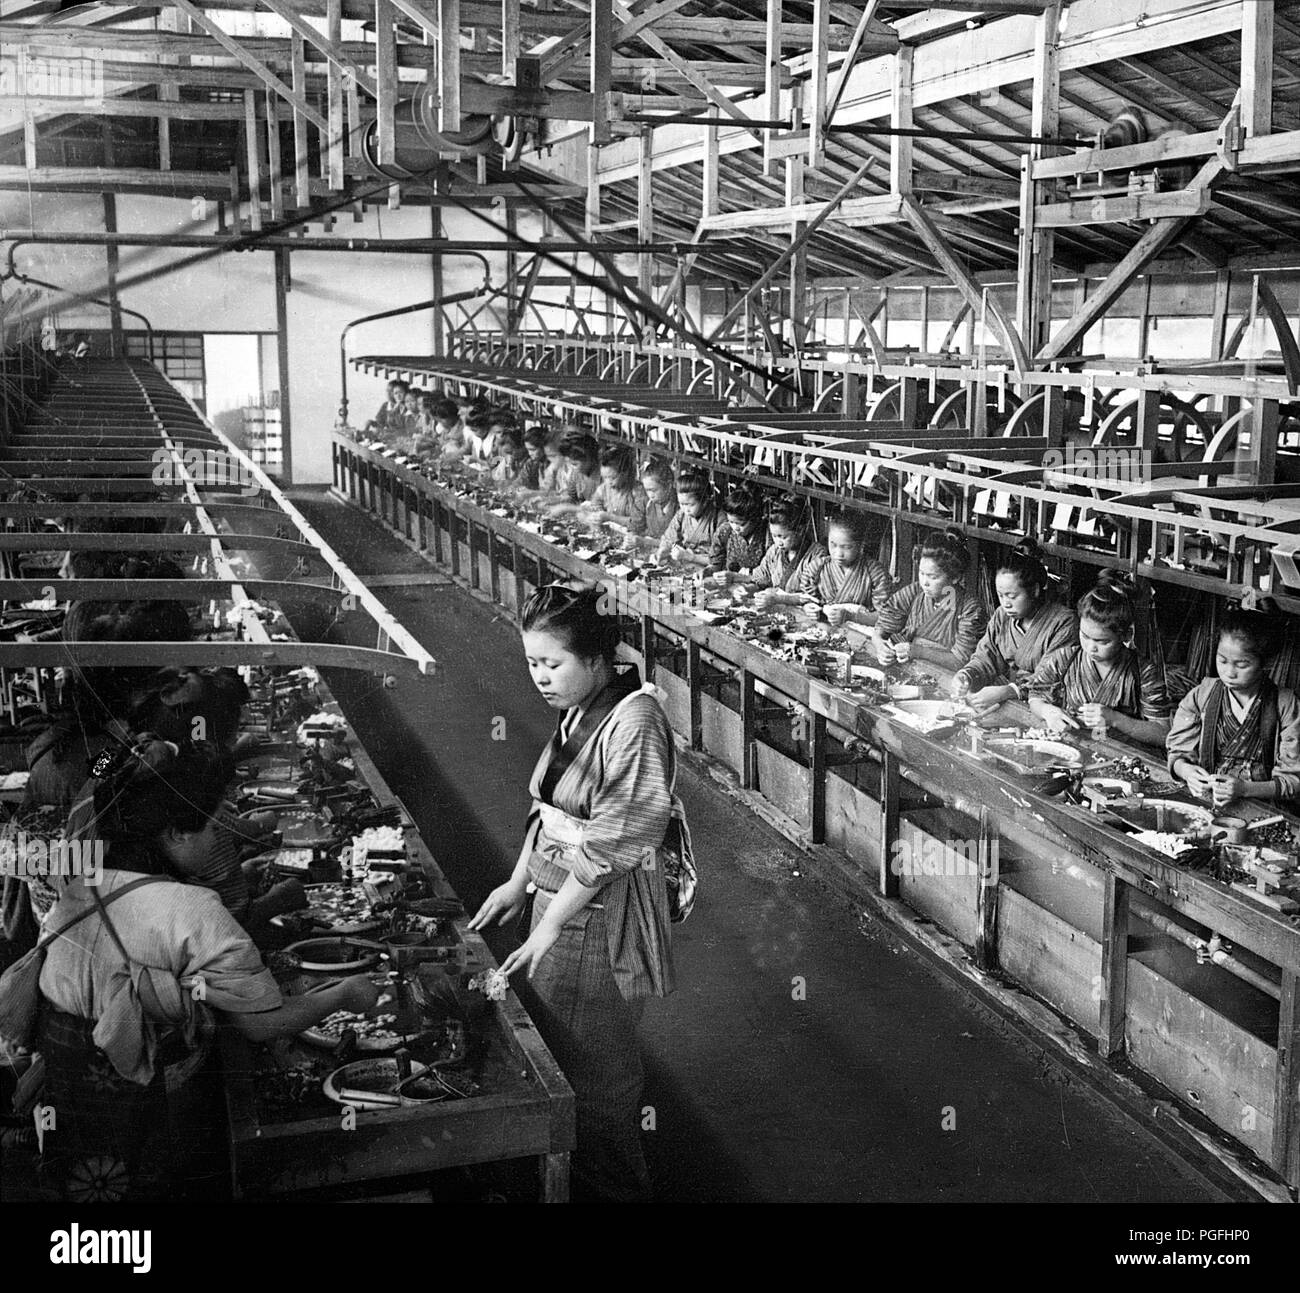 [C. 1900 Japan - Silk Factory] - Kochen Kokons und reeling Silk bei einer seidenfabrik in Nasu, Gunma Präfektur. 20. Jahrhundert vintage Glas schieben. Stockfoto